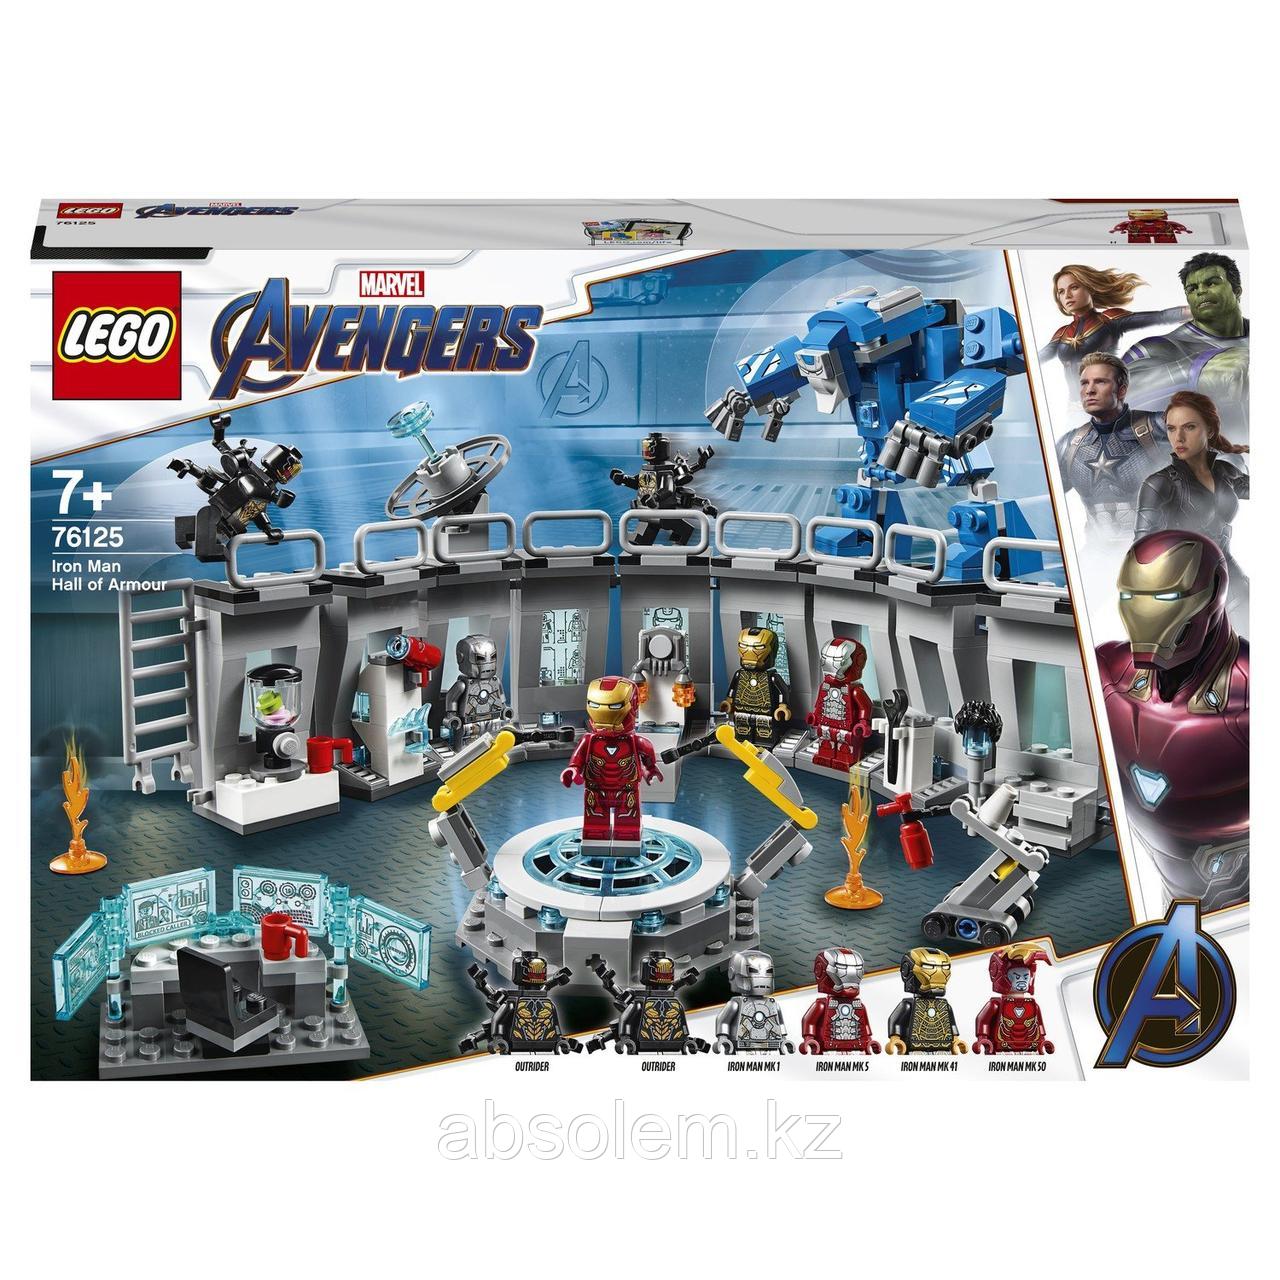 LEGO 76125 Marvel Super Heroes Лаборатория Железного человека